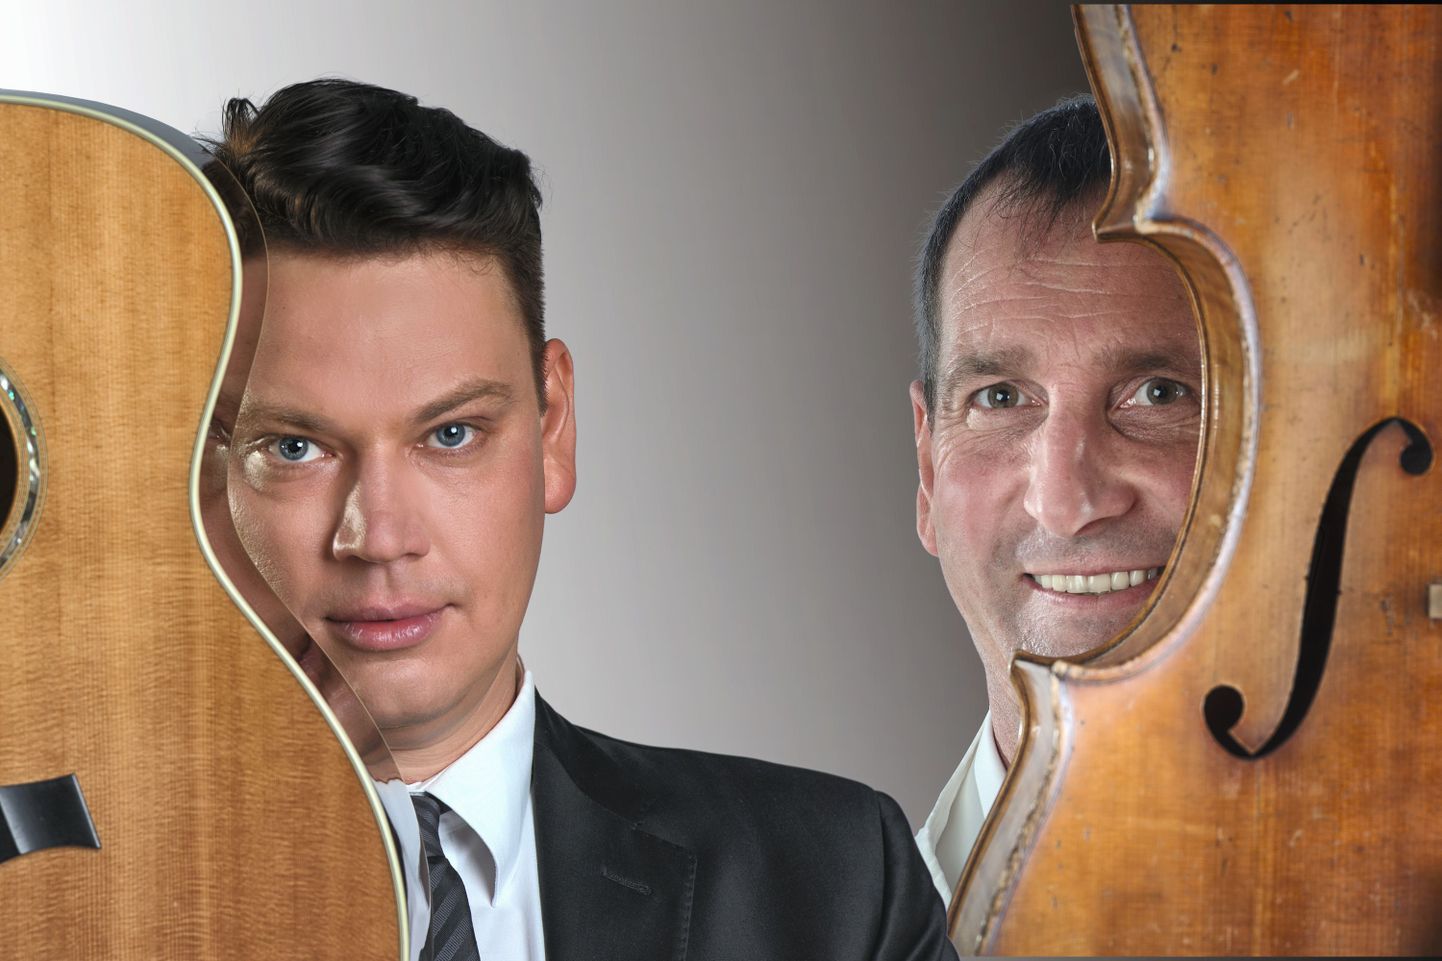 Alen Veziko ja Pärt Tarvase kontsertturnee "Ikka veel teel" toimub 5.-26. novembrini 2015 Eesti eri paigus.